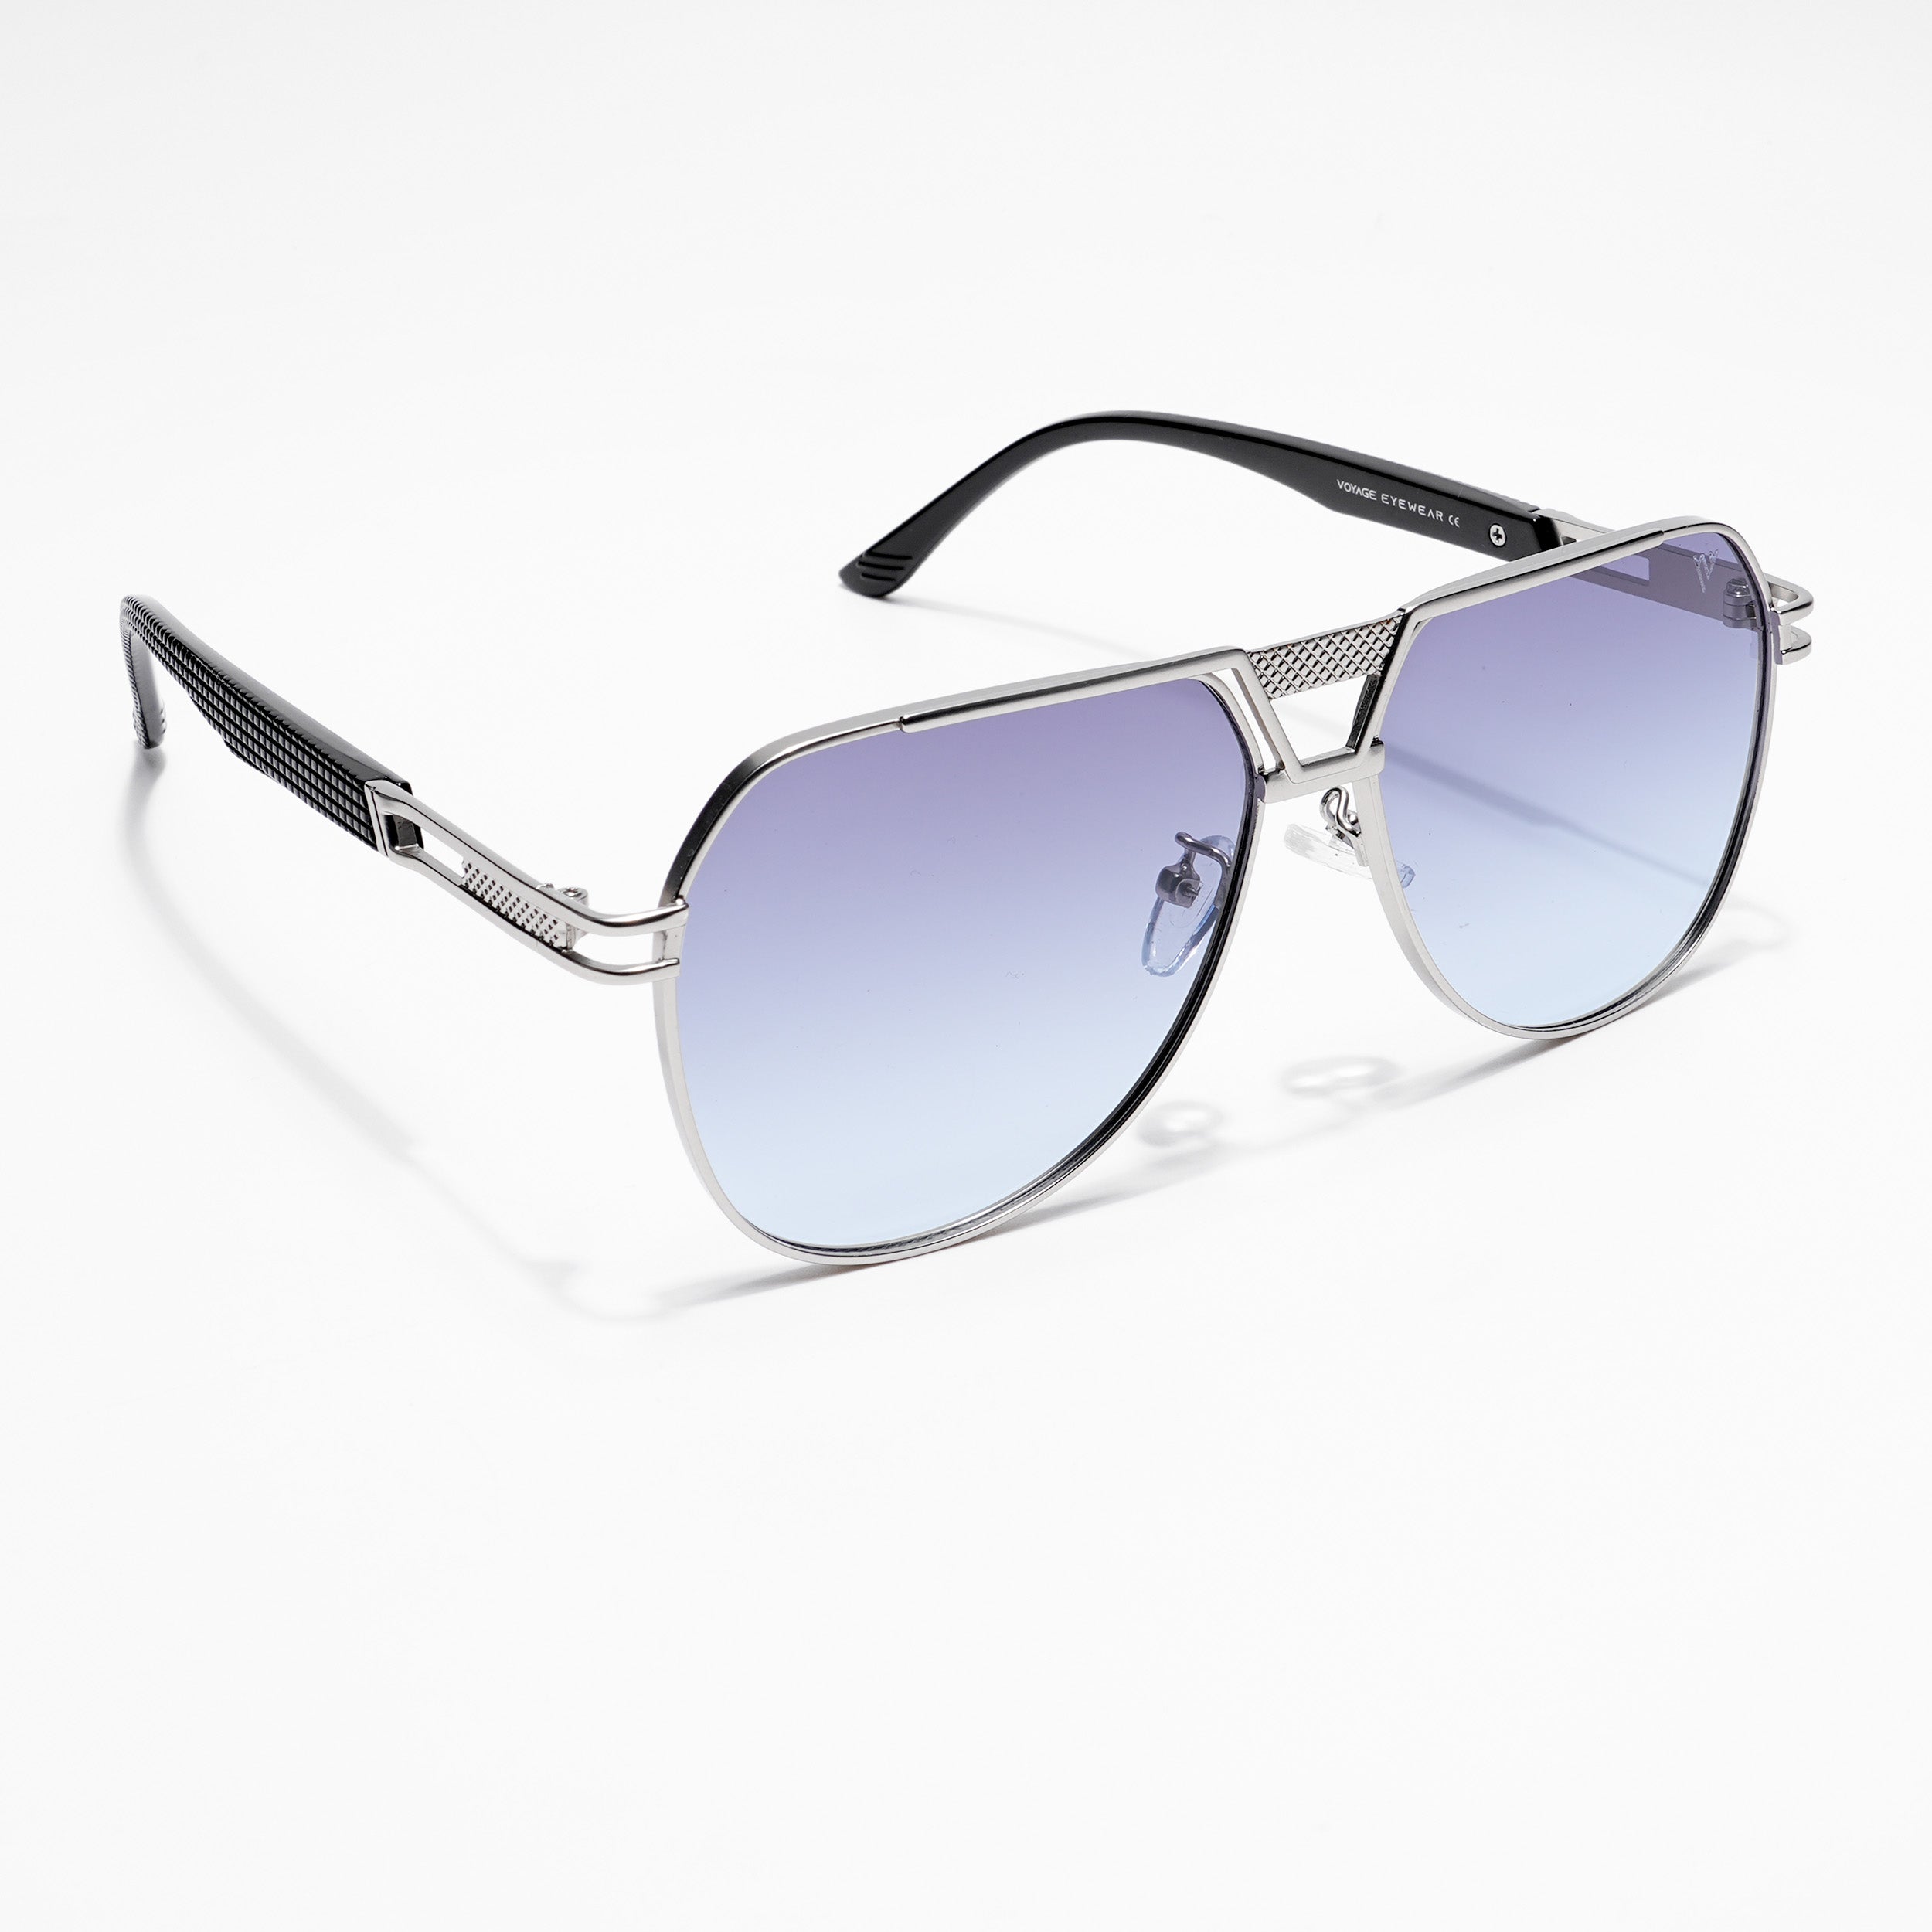 Voyage Aviator Sunglasses for Men & Women (Blue Lens | Silver Frame  - MG5205)